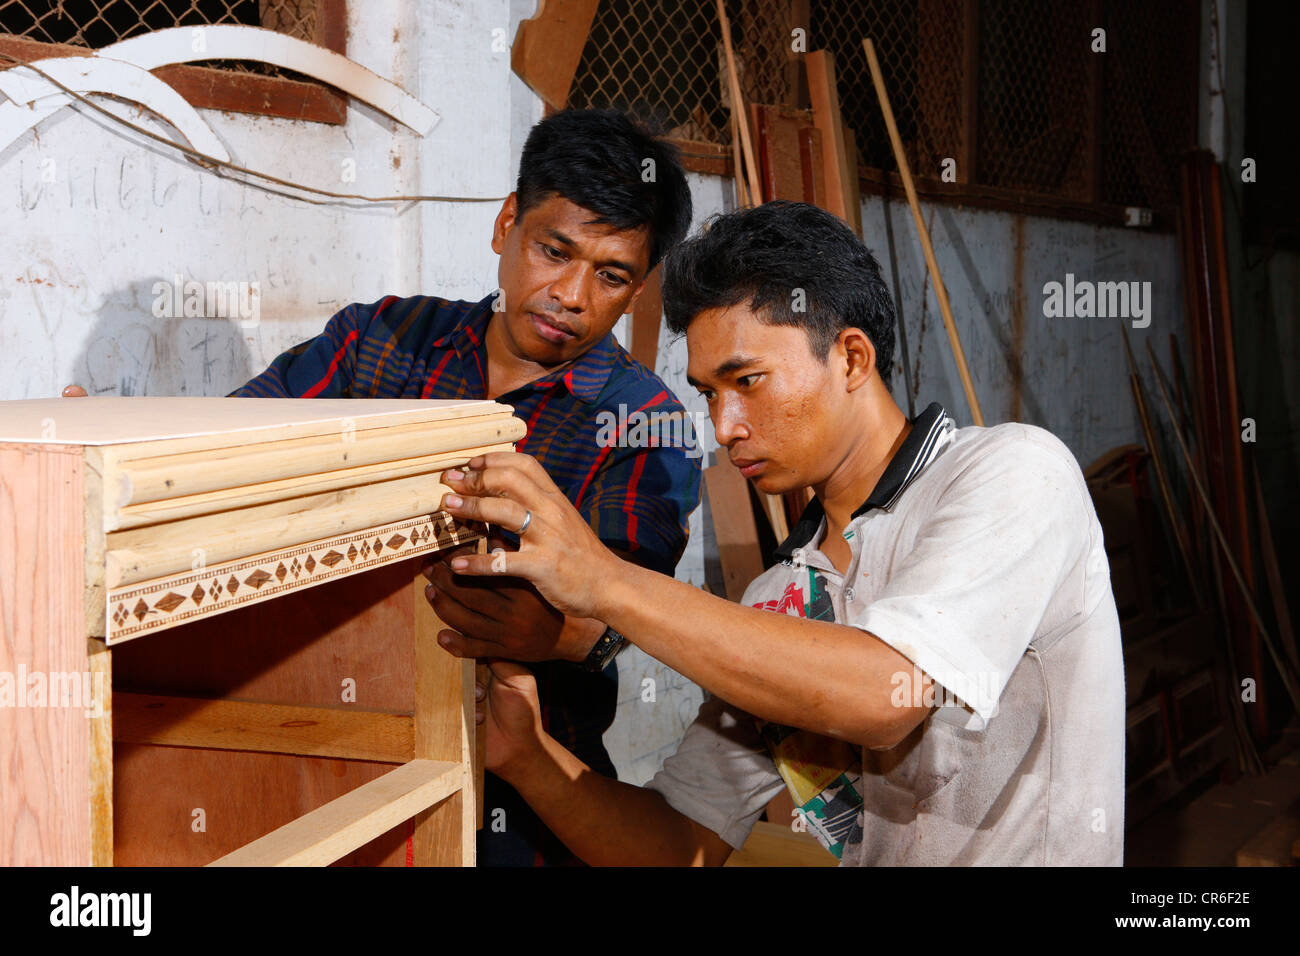 Los hombres jóvenes haciendo un curso de aprendizaje en carpintería, centro de formación profesional, de Siantar, Sumatra, Indonesia, Asia Foto de stock